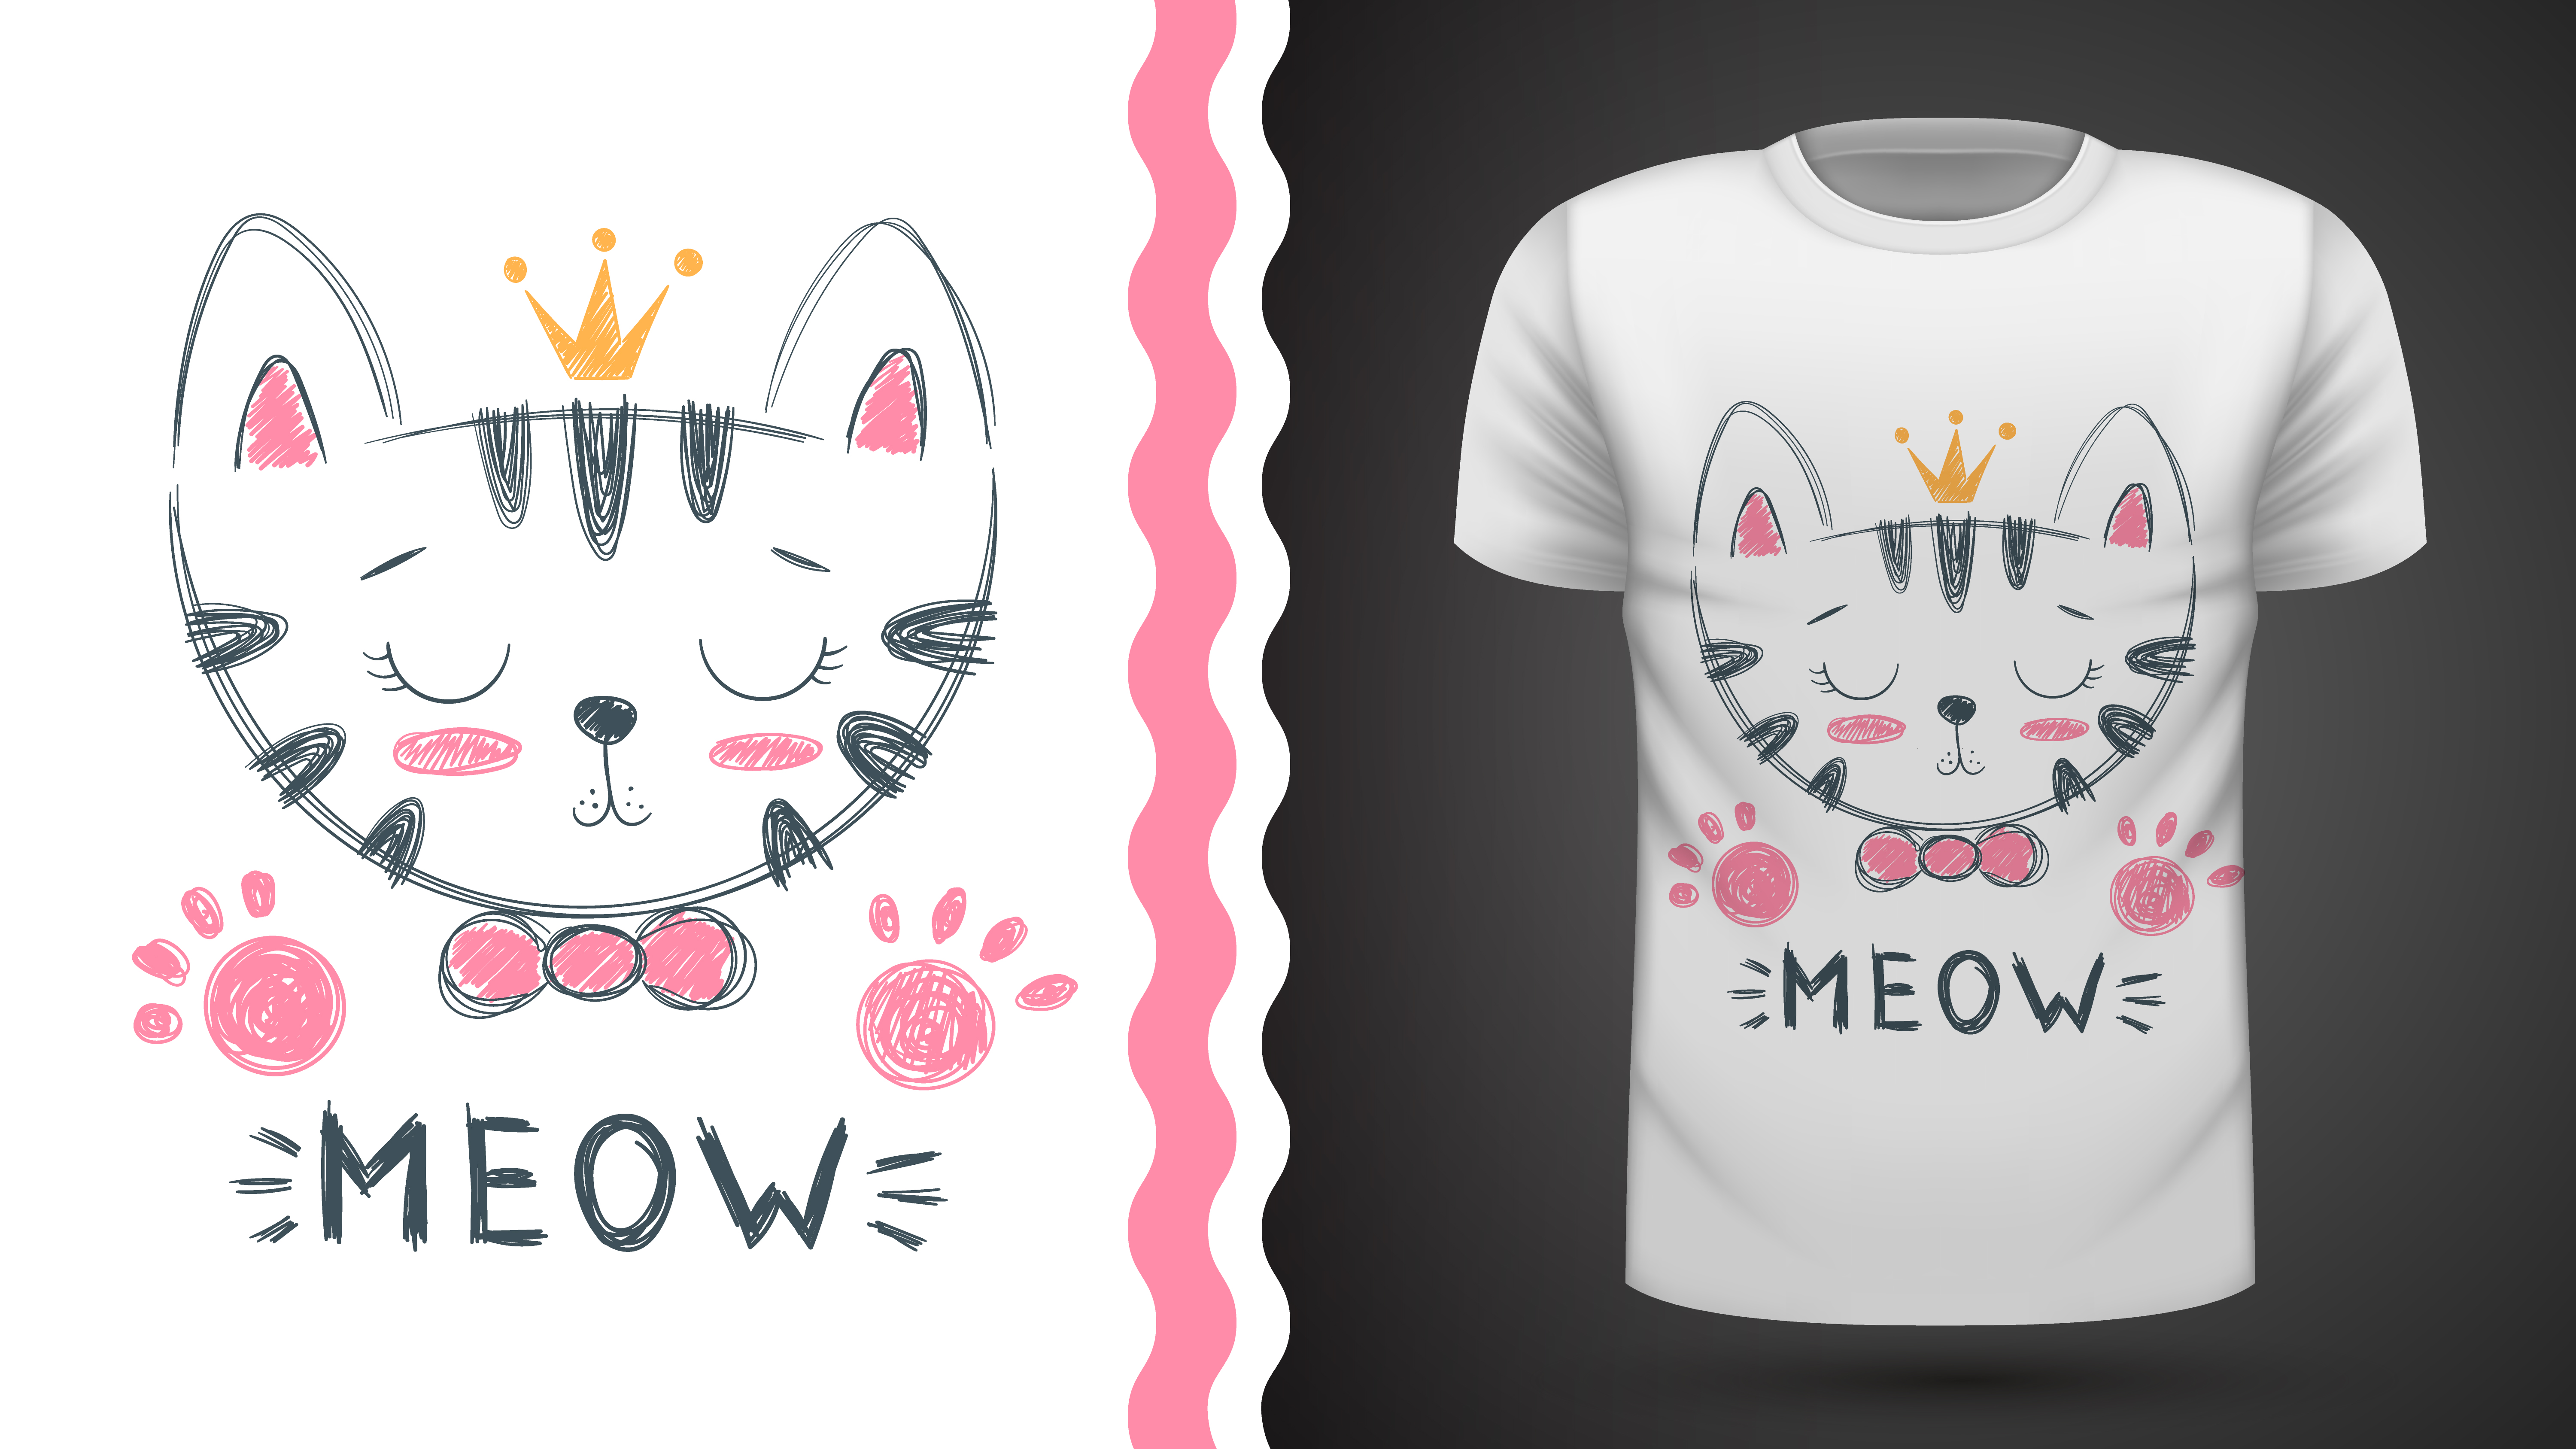 Кошка на футболке рисунок. Кот в футболке вектор. Милый котик на футболку нарисованный. Принт на футболке кошка на булавке.